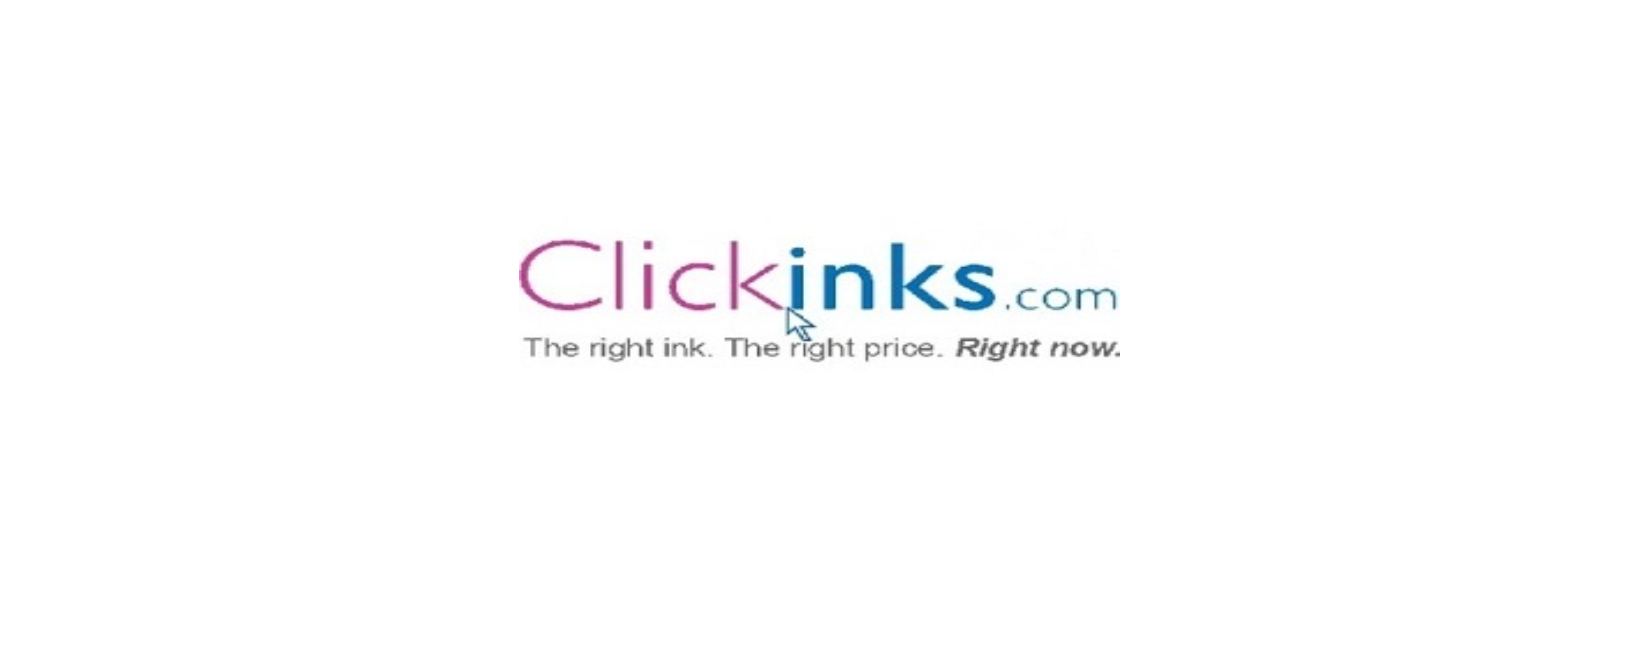 ClickInks.com Discount Code 2022